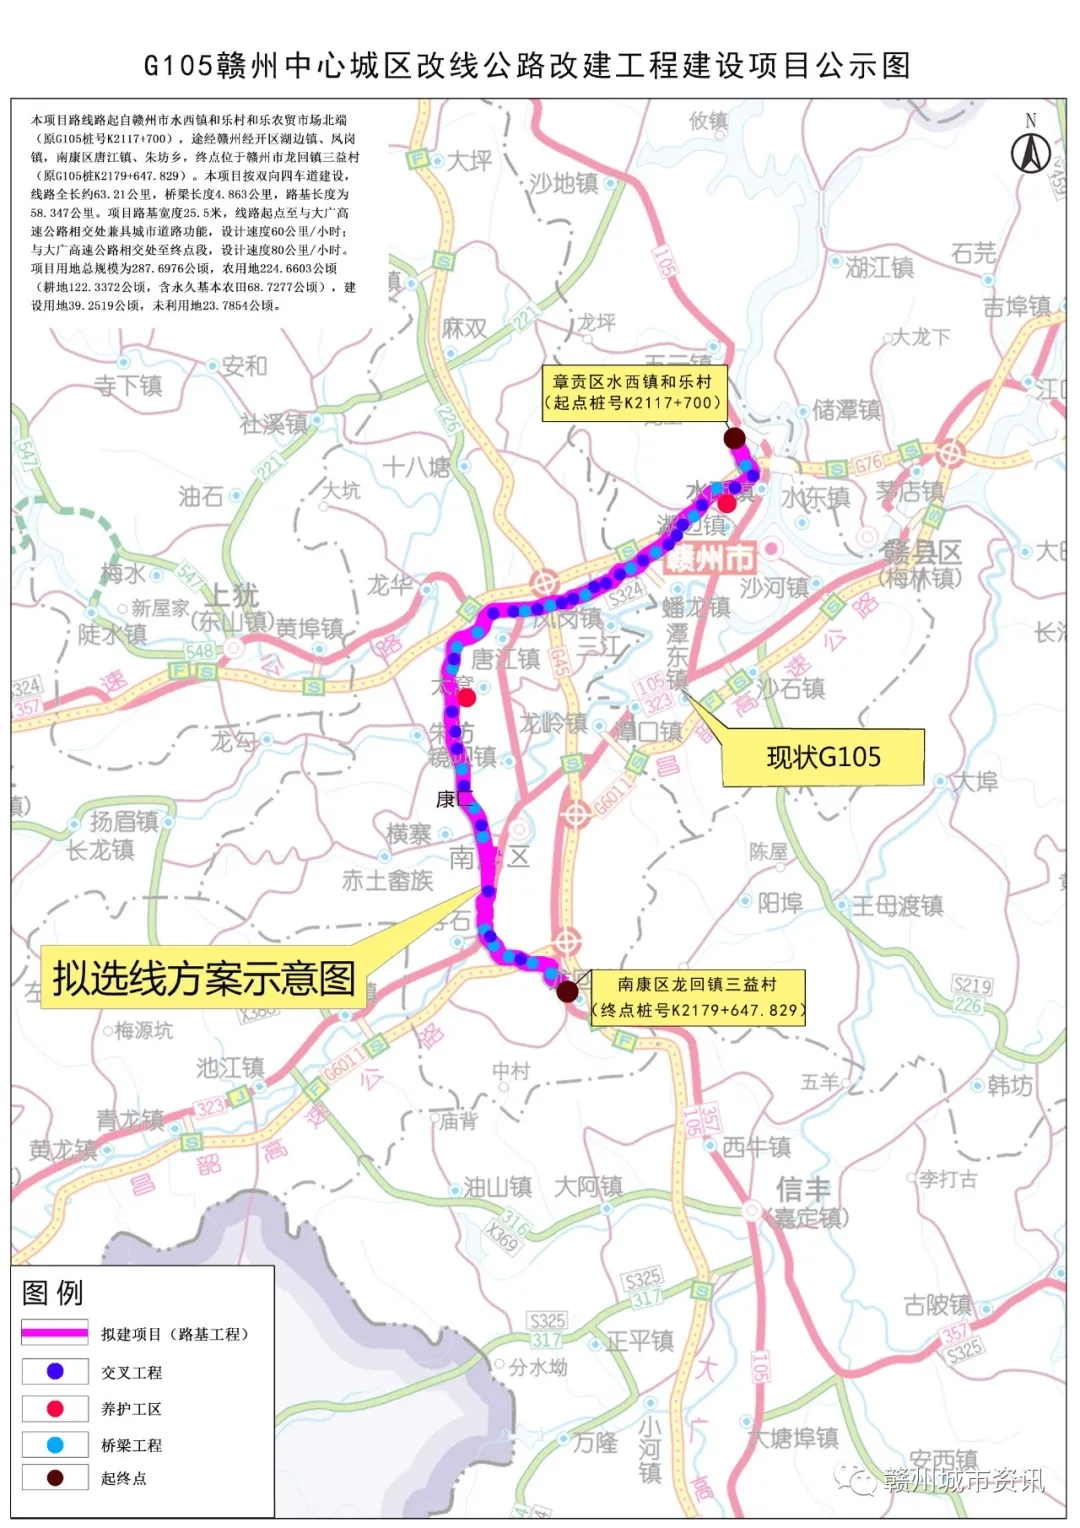 G105赣州中心城区改线公路改建建设项目用地预审与选址的批前公示